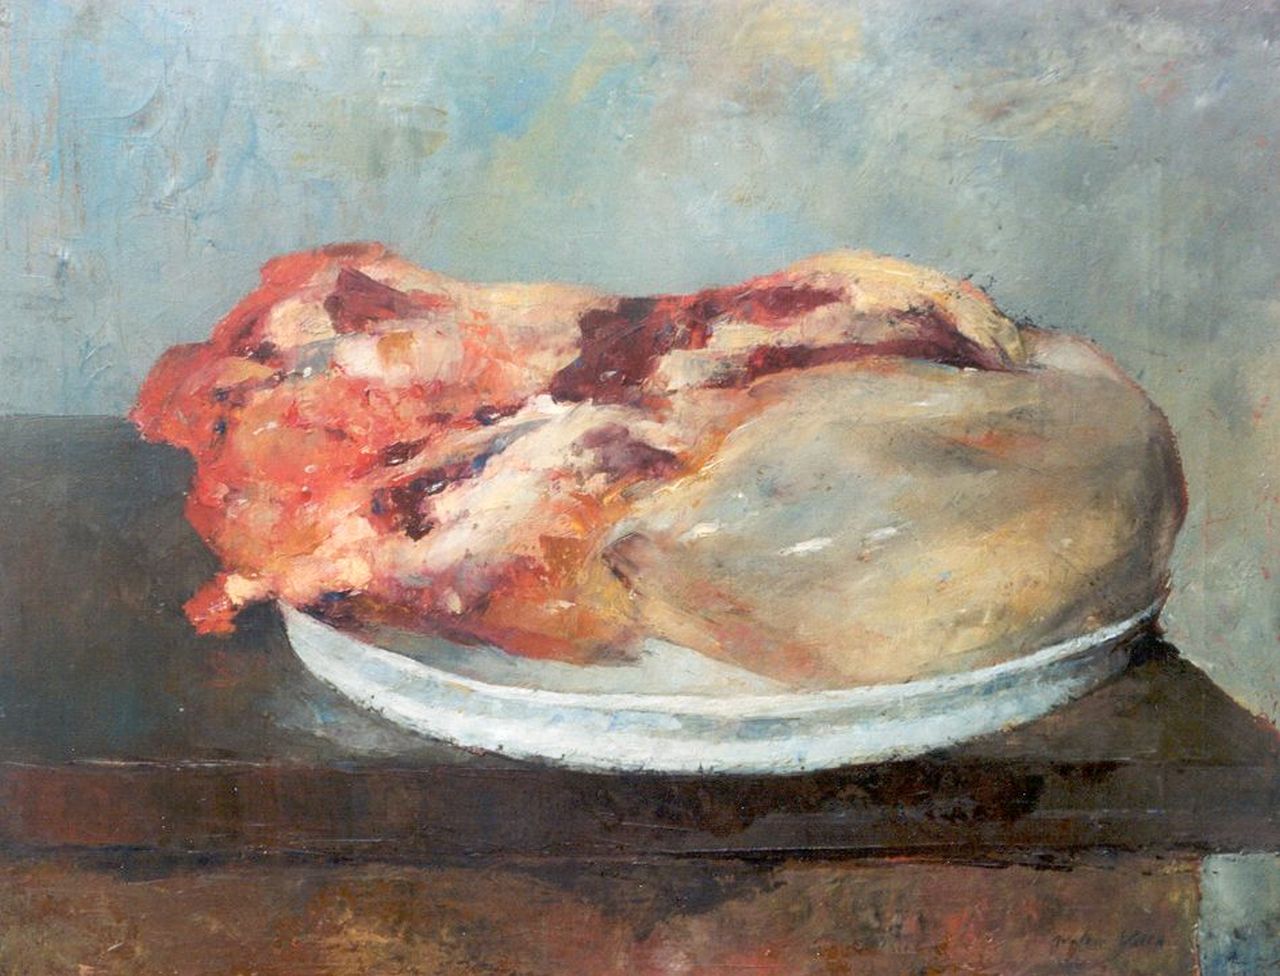 Vaes W.  | Walter Vaes, Braising steak, oil on canvas 40.3 x 50.4 cm, signed l.r.